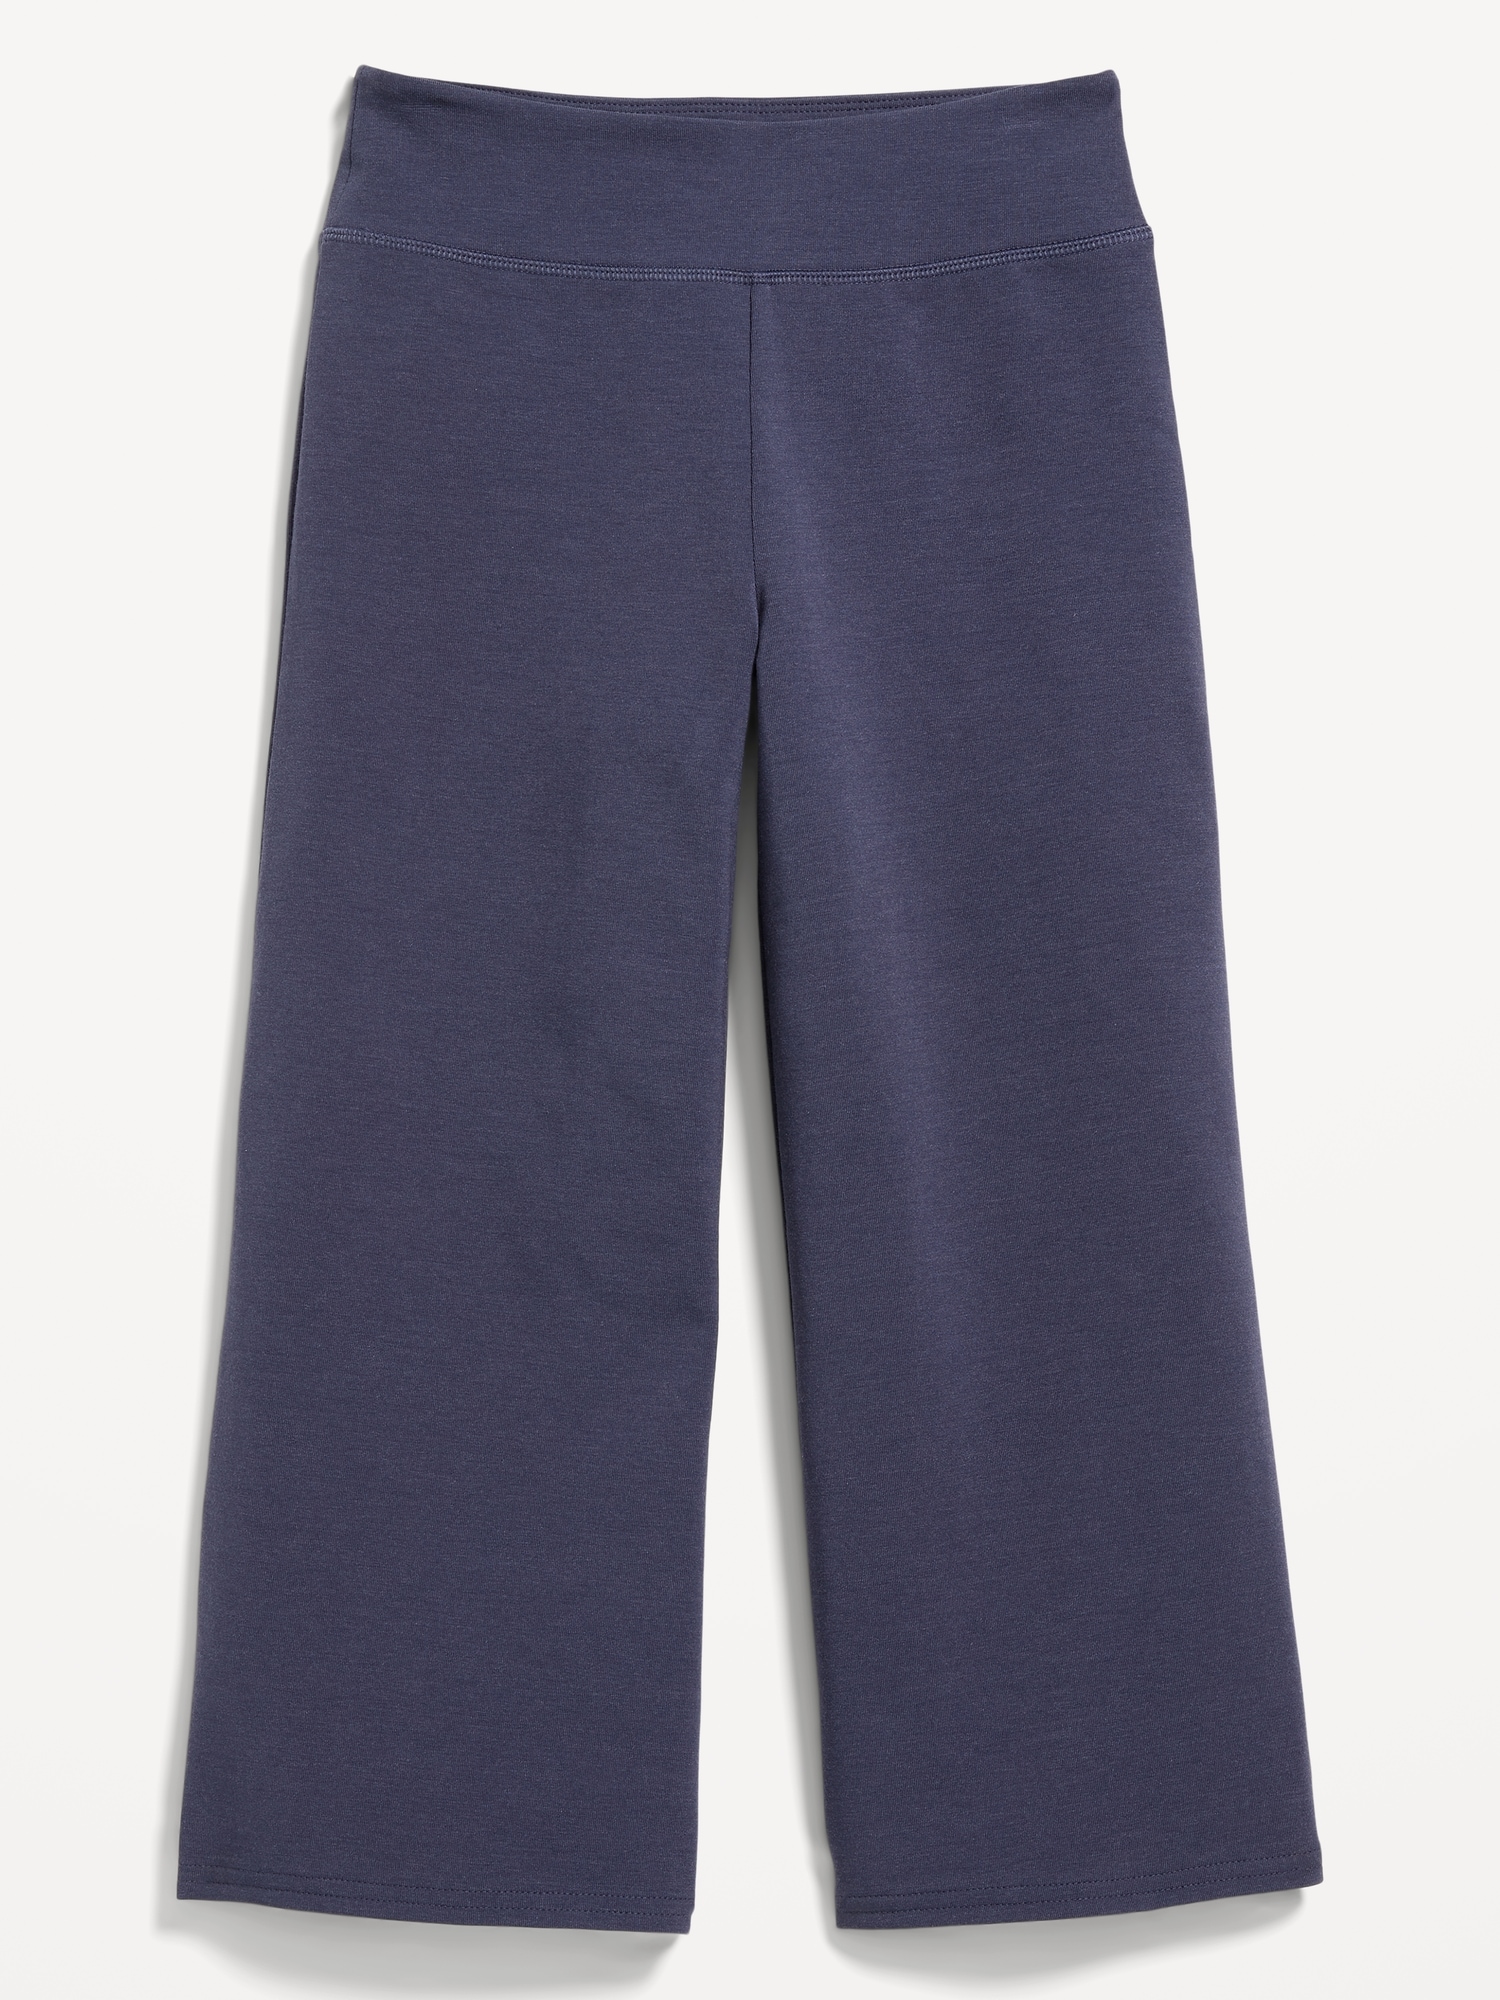 Capri Pants for Women | Old Navy